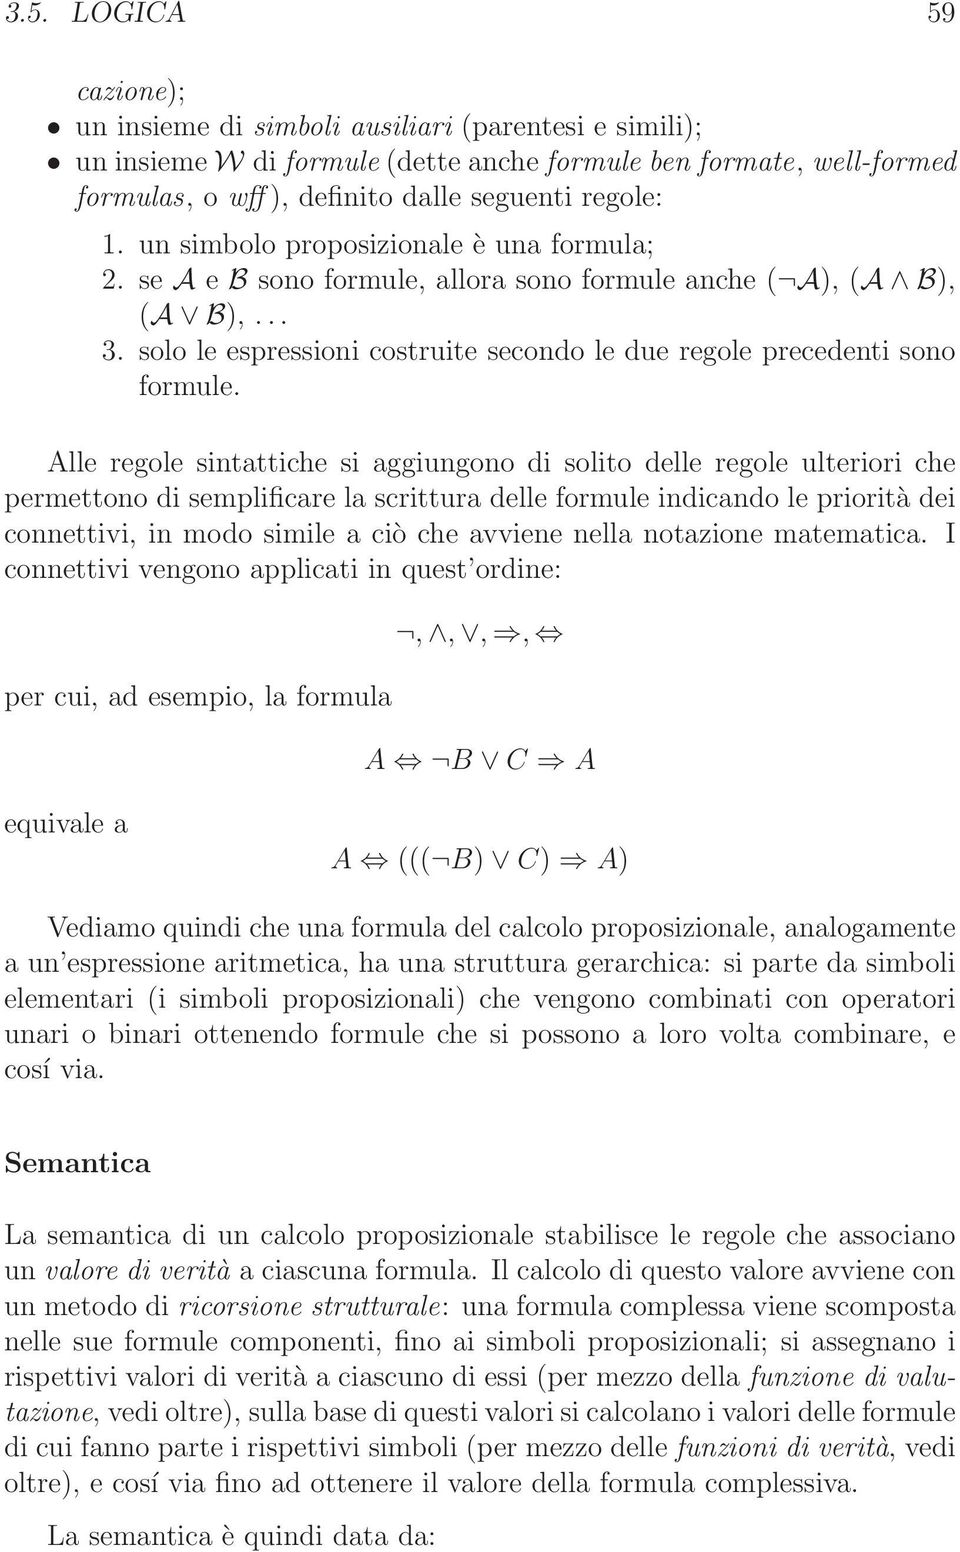 Alle regole sintattiche si aggiungono di solito delle regole ulteriori che permettono di semplificare la scrittura delle formule indicando le priorità dei connettivi, in modo simile a ciò che avviene